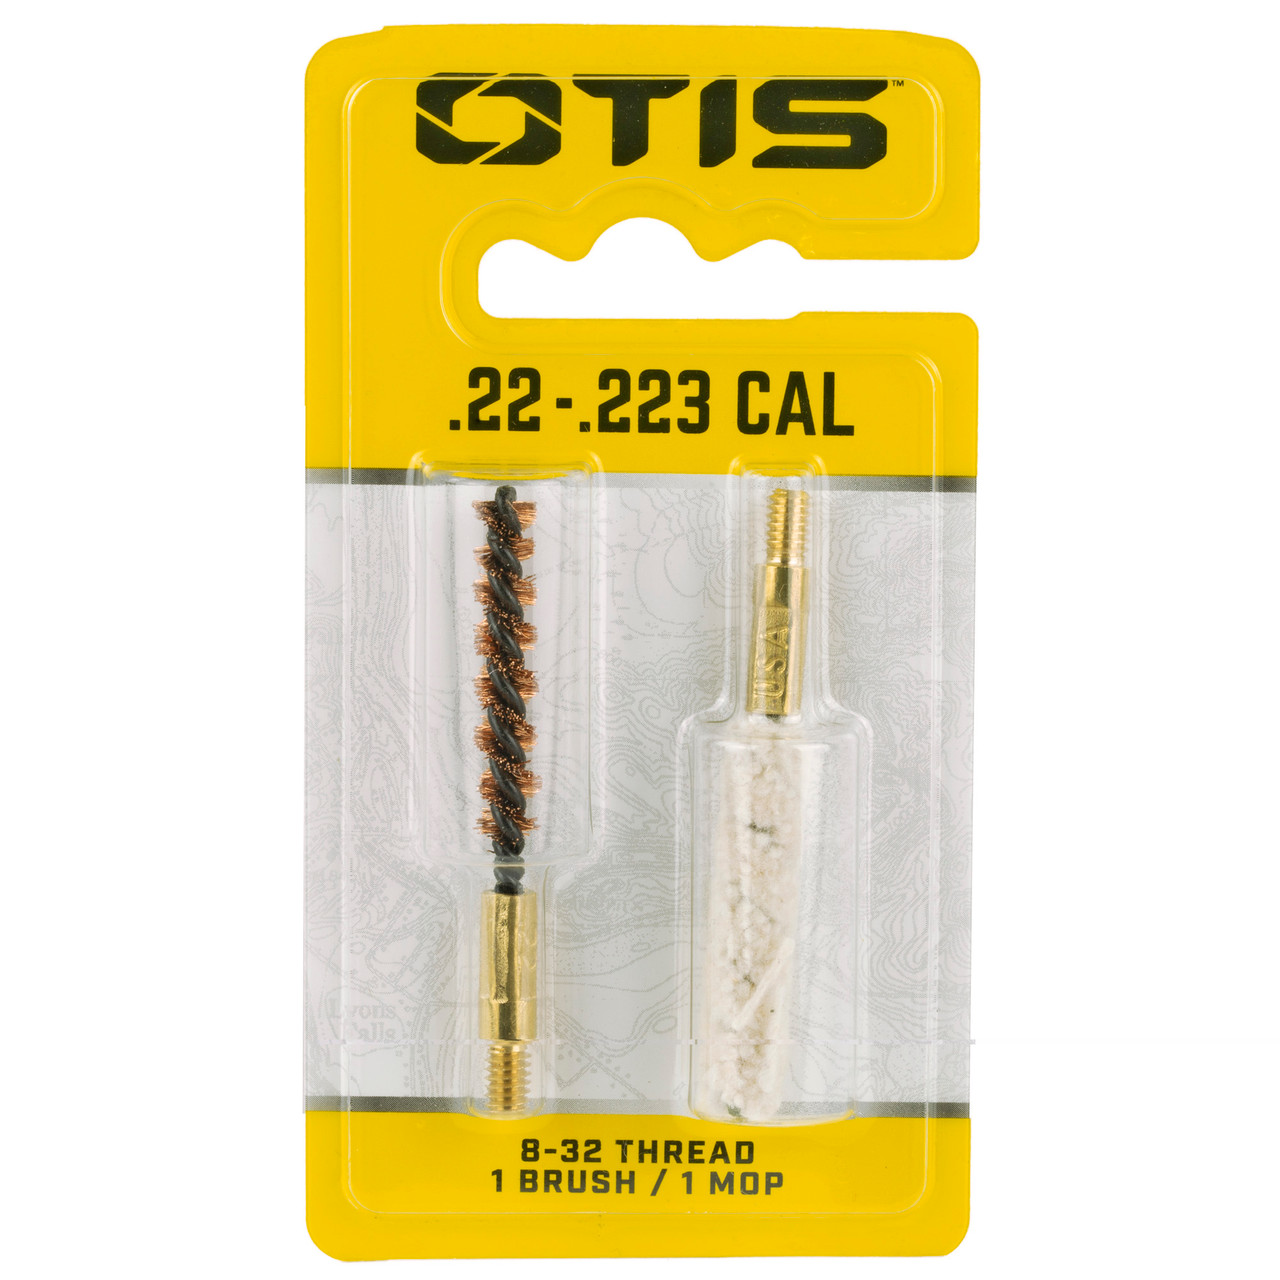 Otis Technologies FG-322-MB 22-223cal Brush/mop Combo Pack